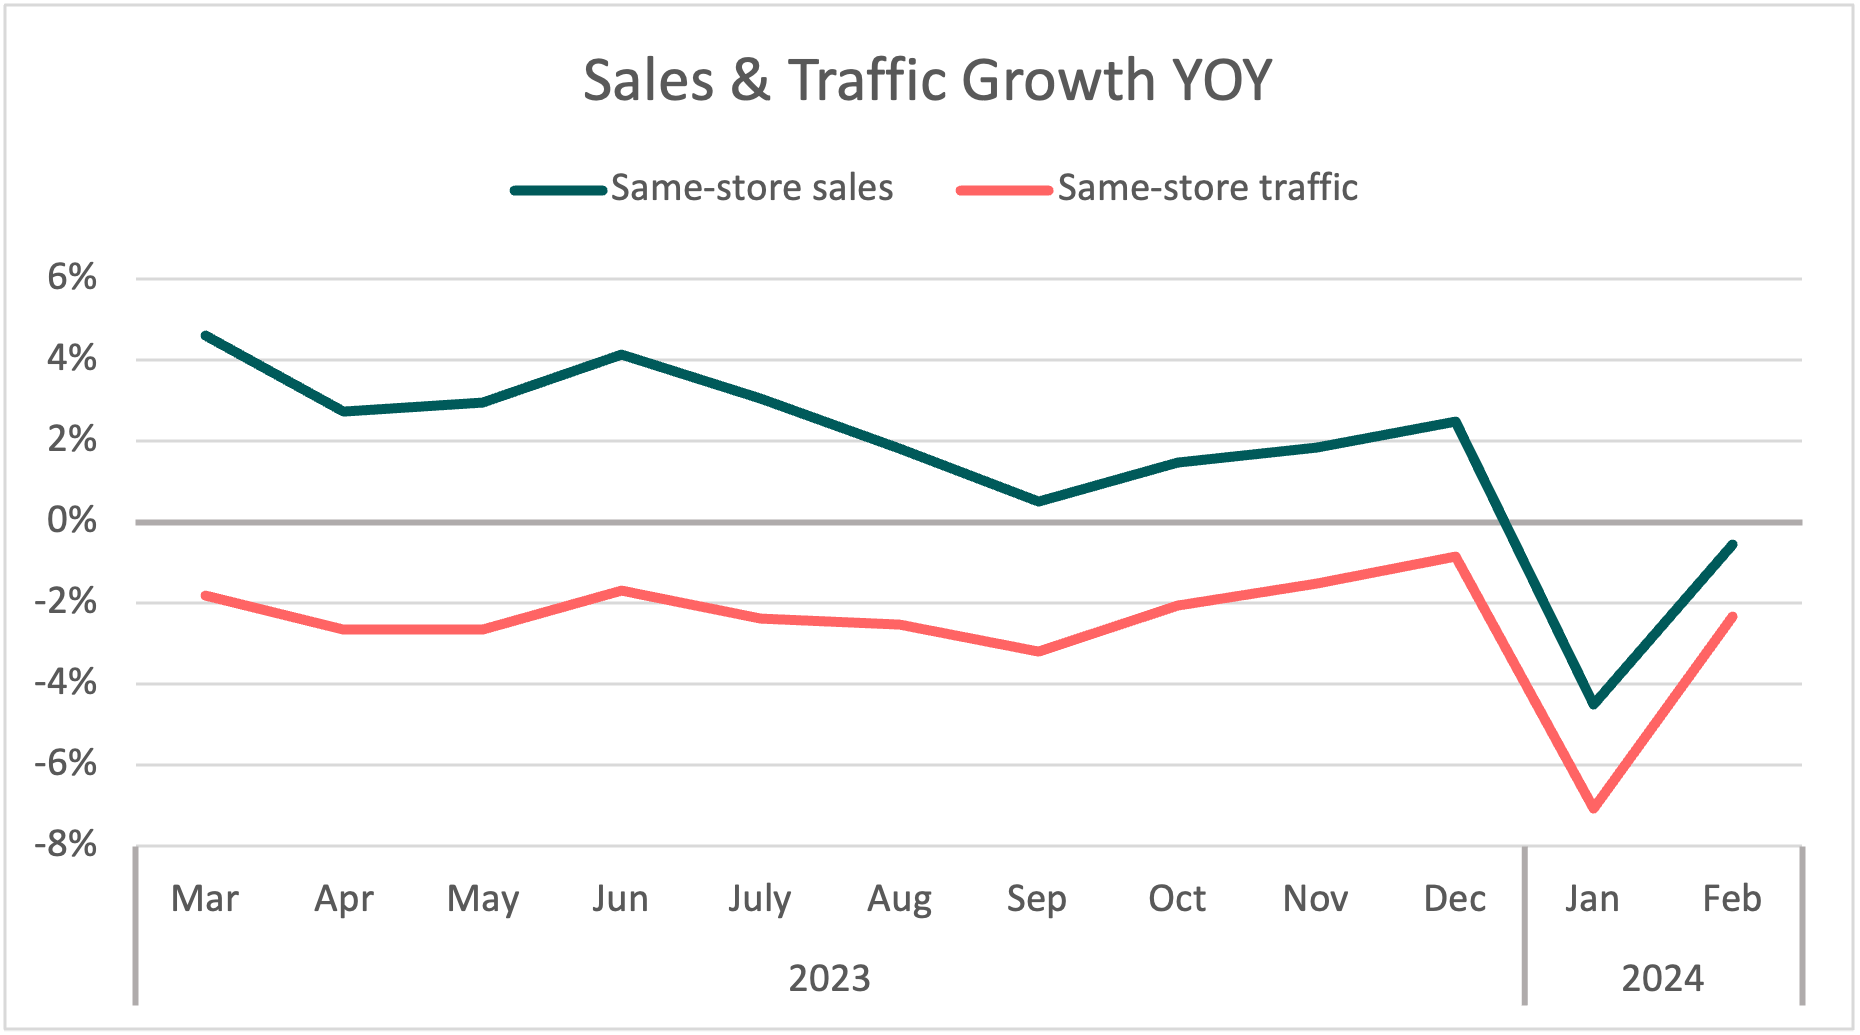 Sales & Traffic Growth YOY 2023-2024